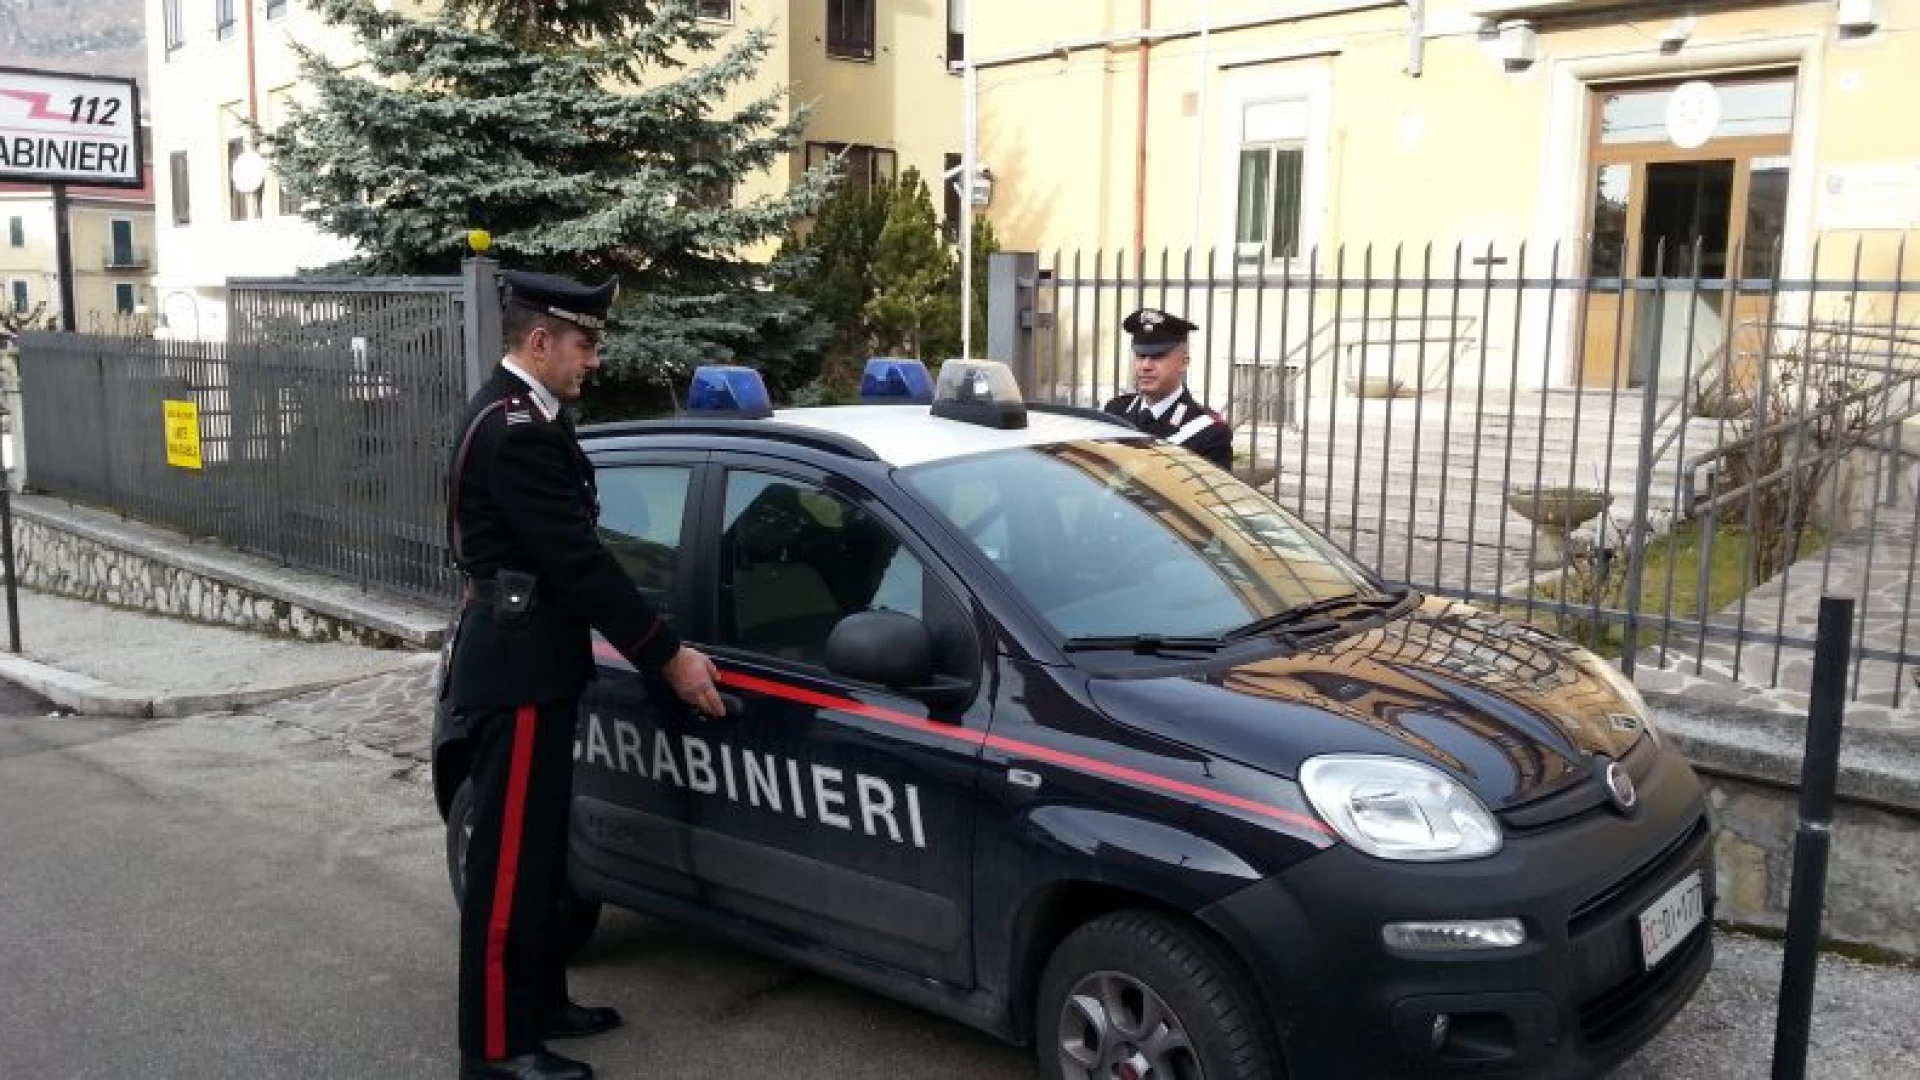 Pescasseroli: proseguono le attività antidroga dei Carabinieri. Denunciato giovane in possesso di marjuana pronta alla vendita.